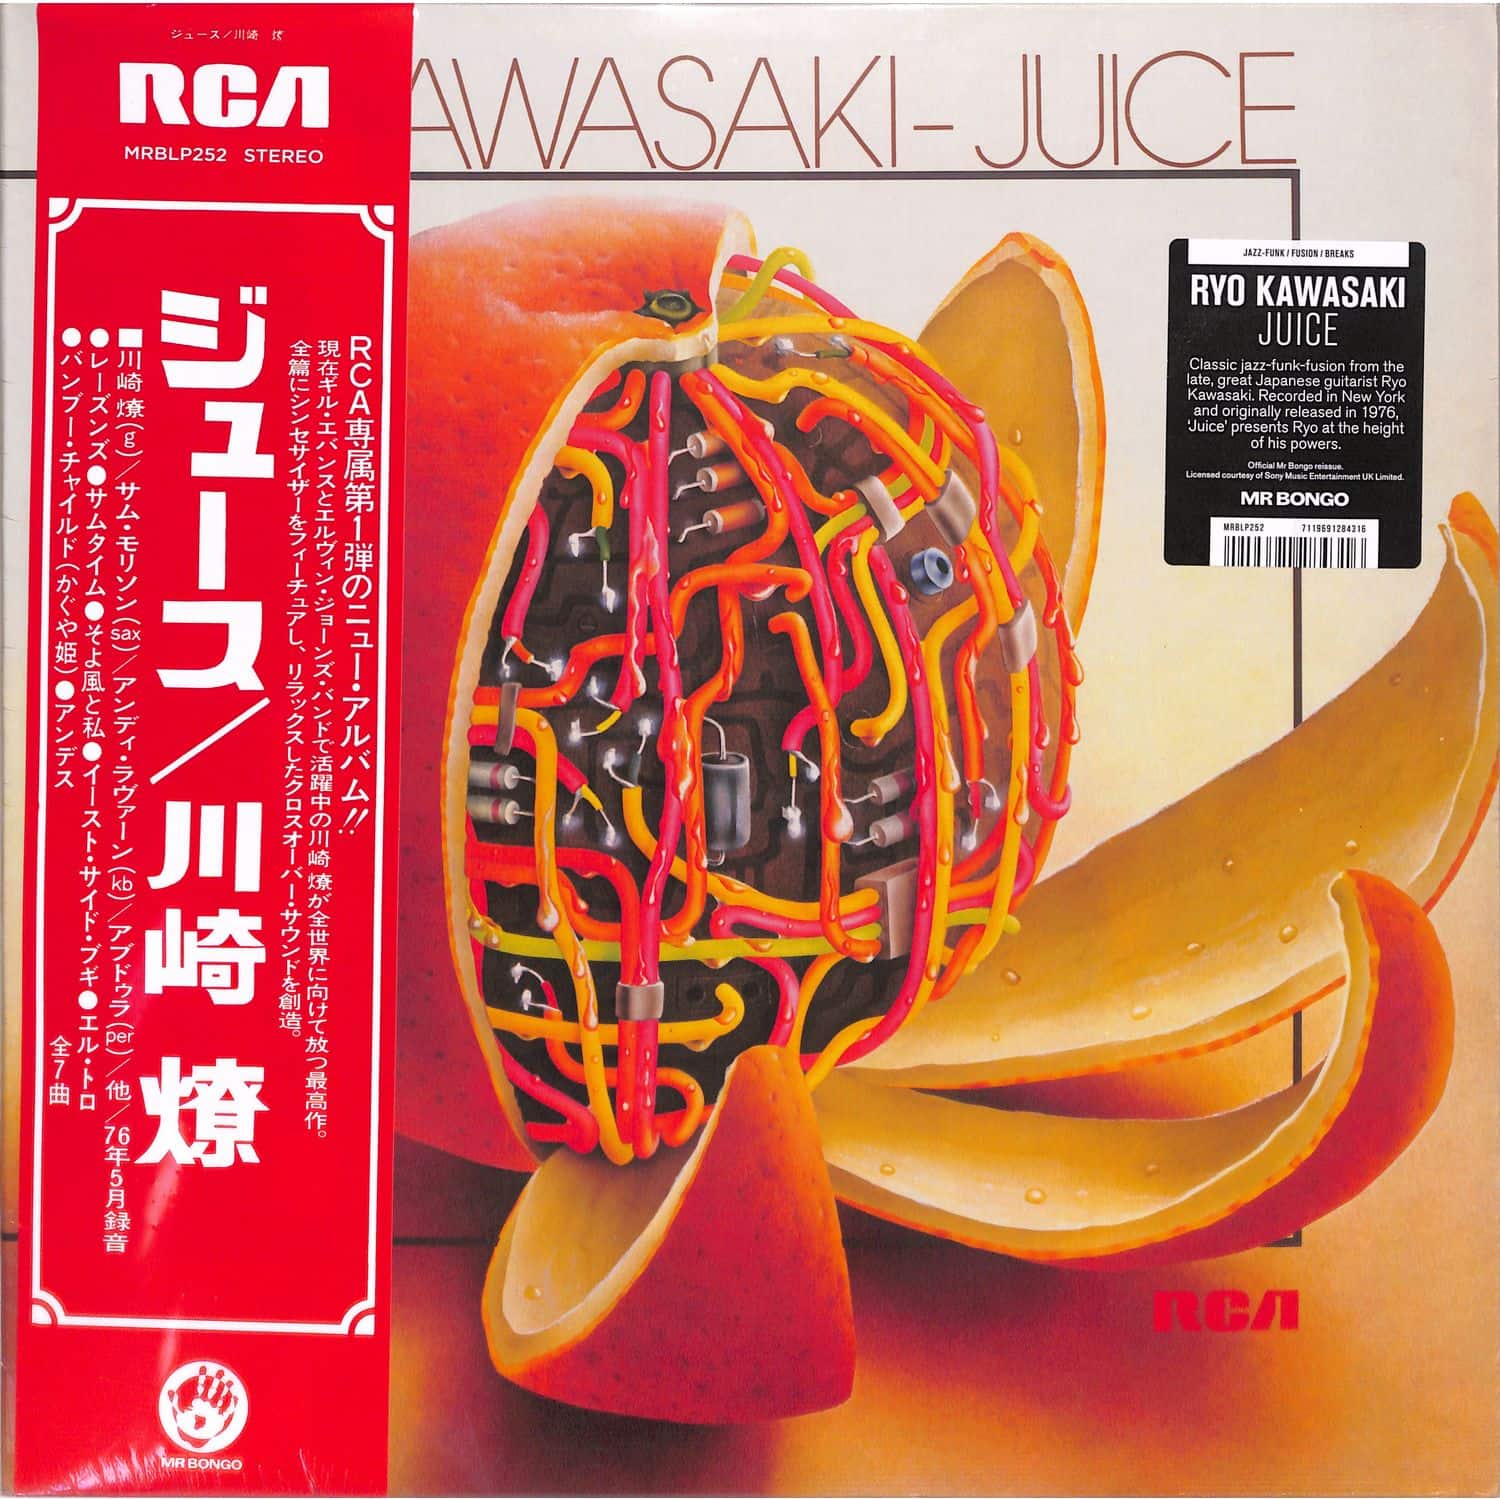 Ryo Kawasaki - JUICE 